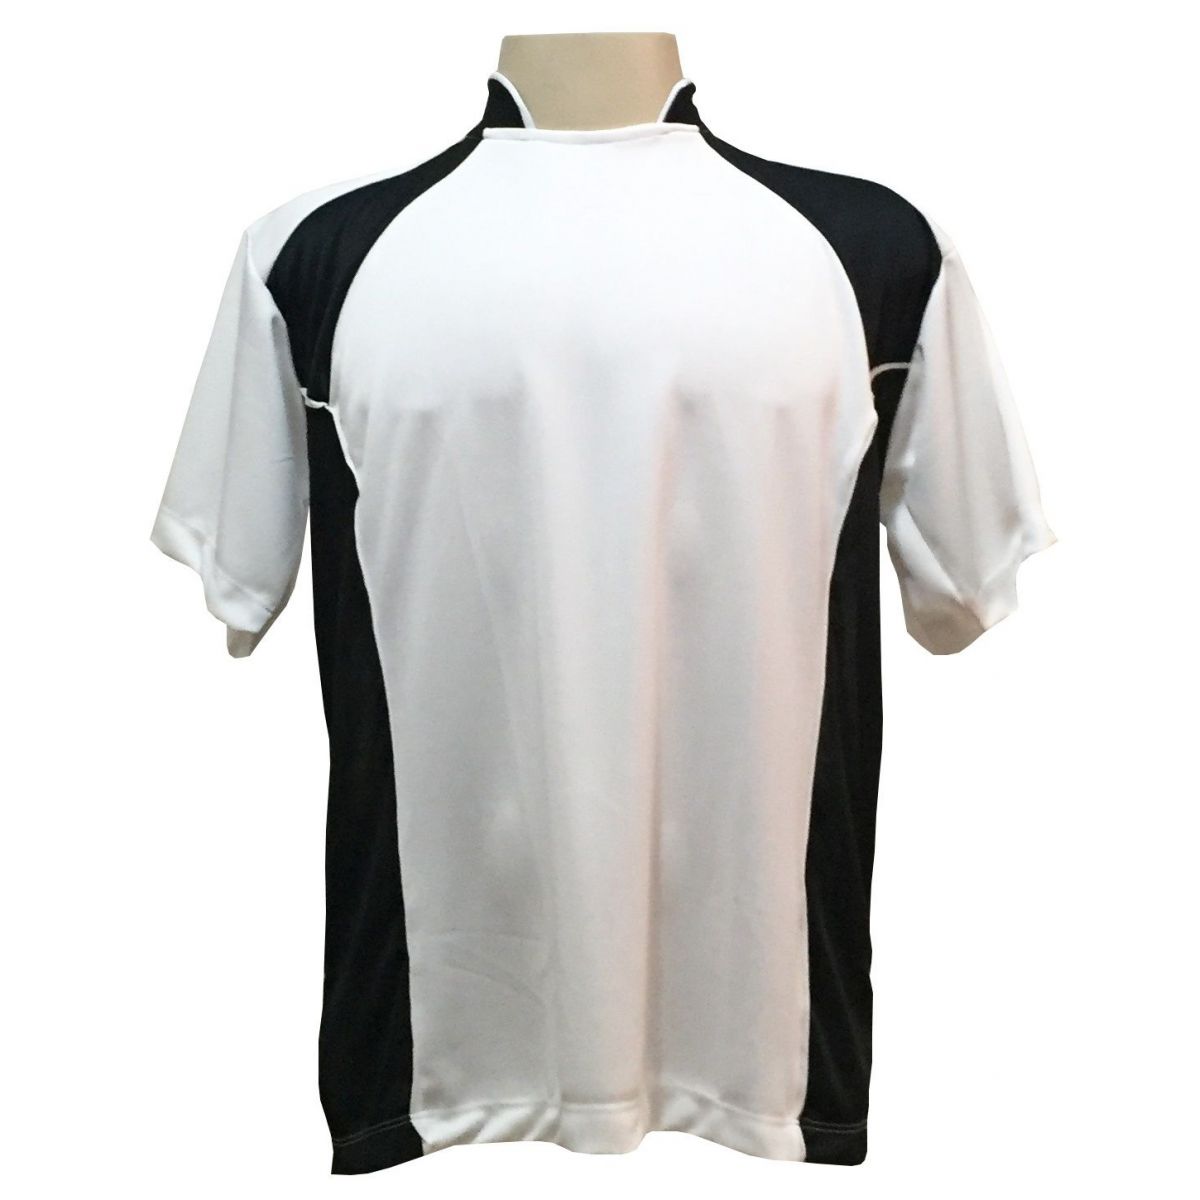 Uniforme Esportivo com 14 camisas modelo Suécia Branco/Preto + 14 calções modelo Copa + 1 Goleiro + Brindes